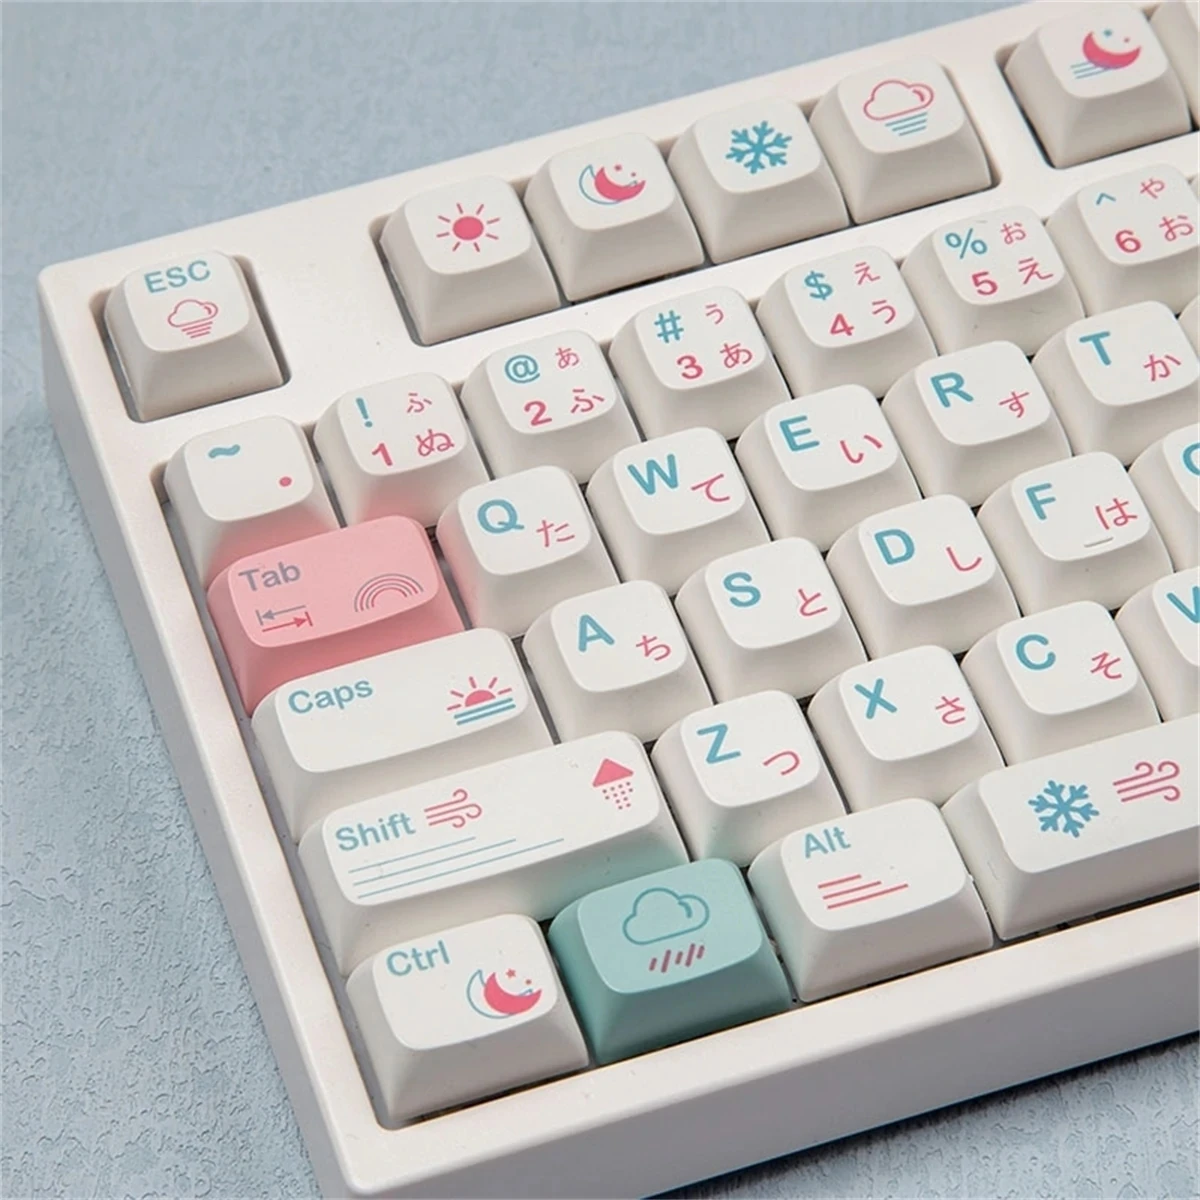 

132 Keys Weather Keycap Set PBT Sublimation XDA Profile English/Japanese Custom Keycaps for Mechanical Keyboard - Japanese